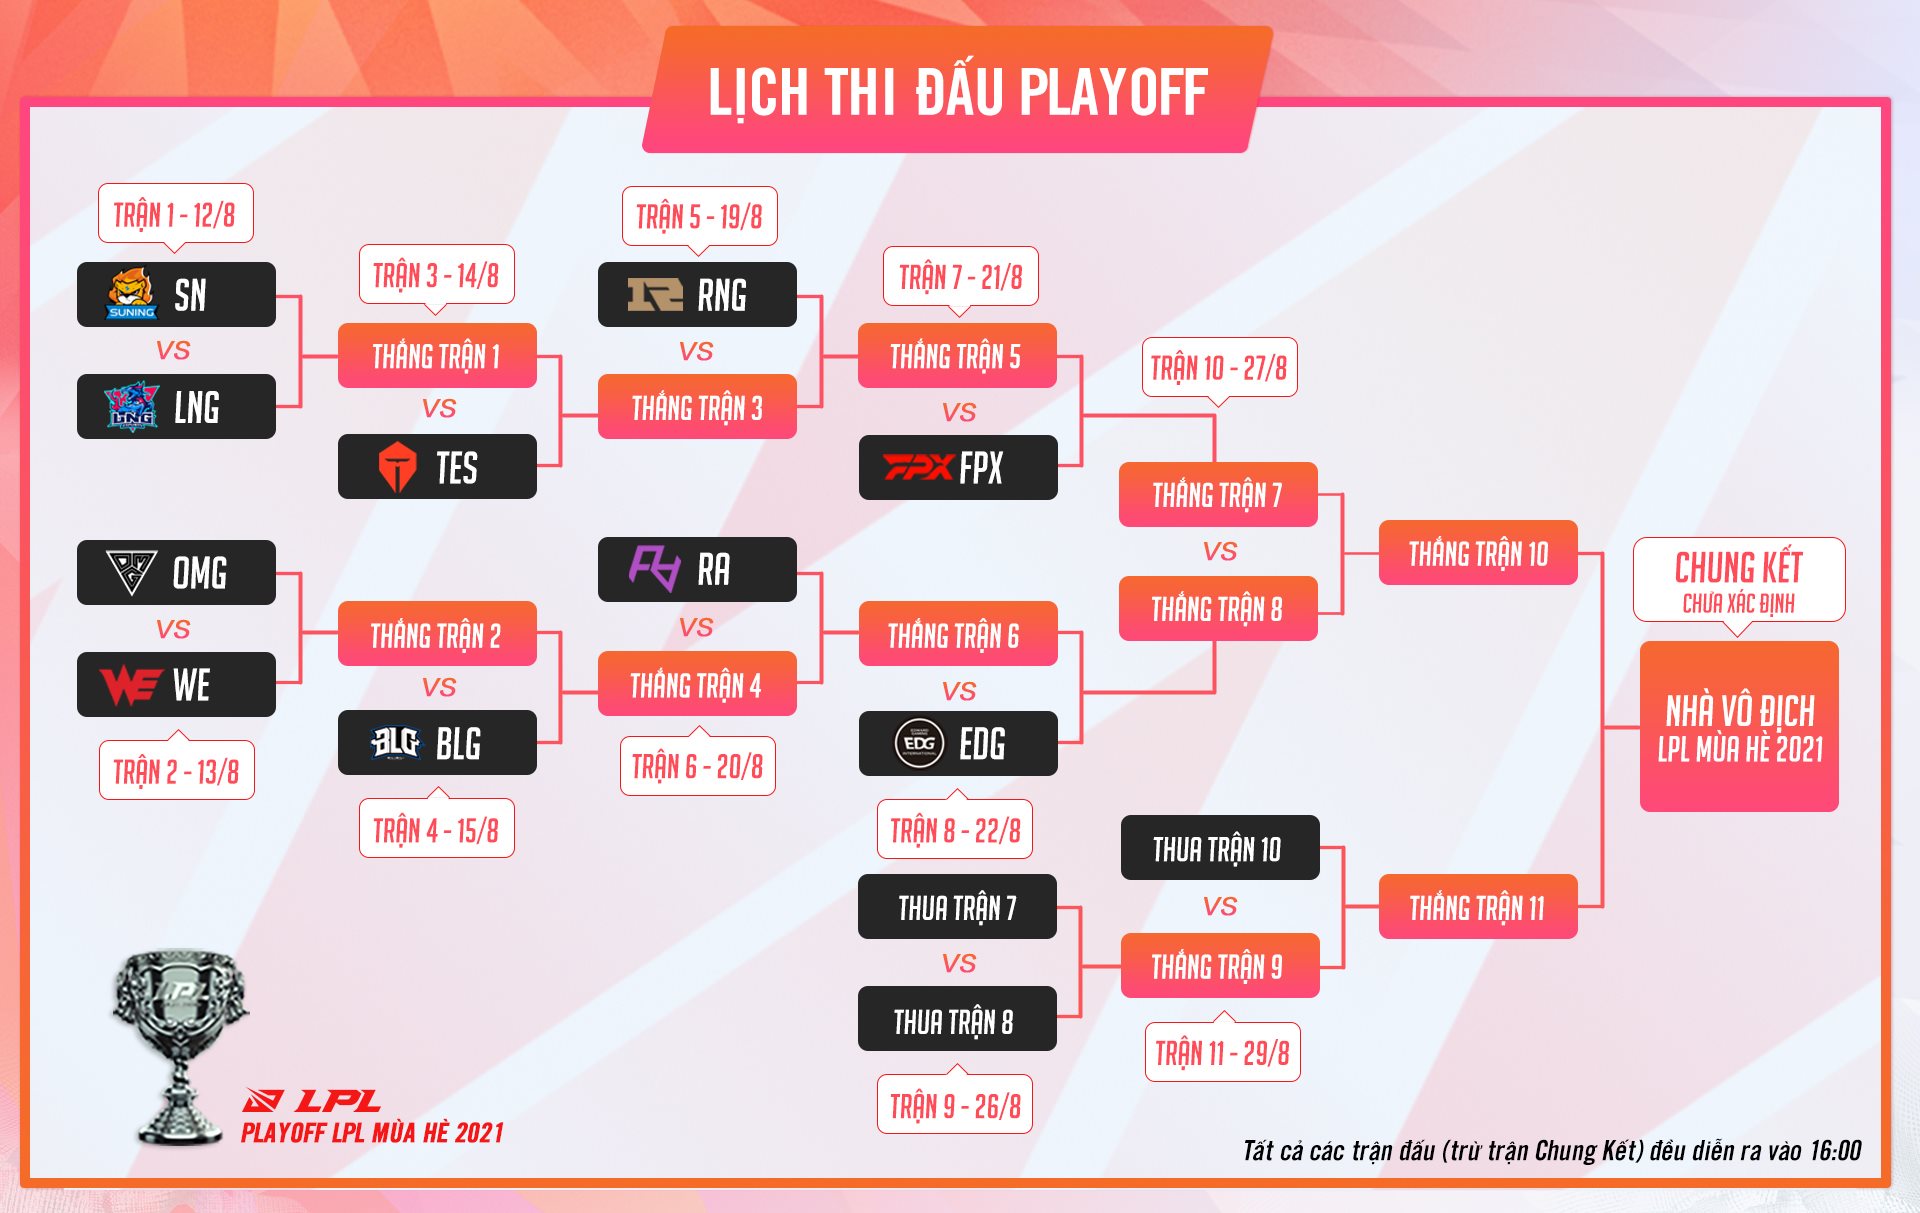 LMHT: Lịch thi đấu vòng play-off LPL mùa Hè 2021 - Ảnh 2